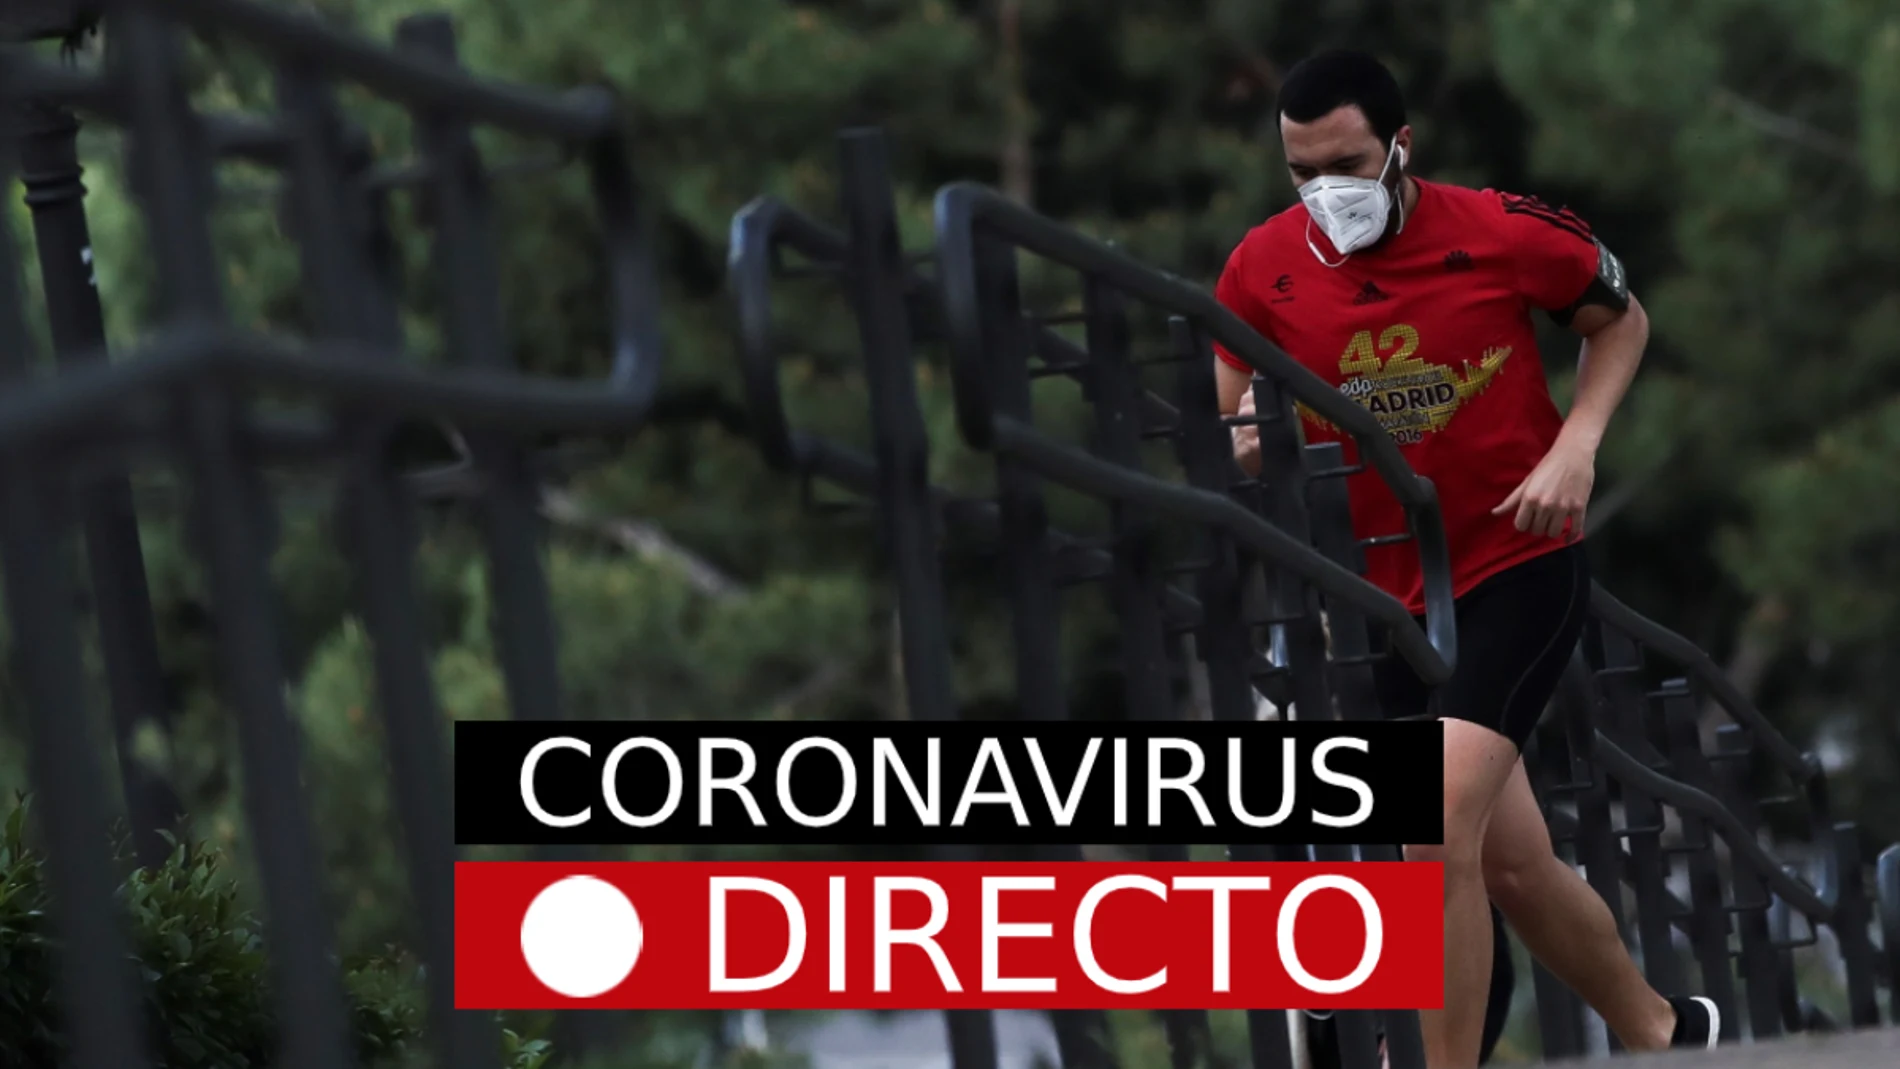 Coronavirus España hoy | Noticias, casos, muertos y última hora, en directo